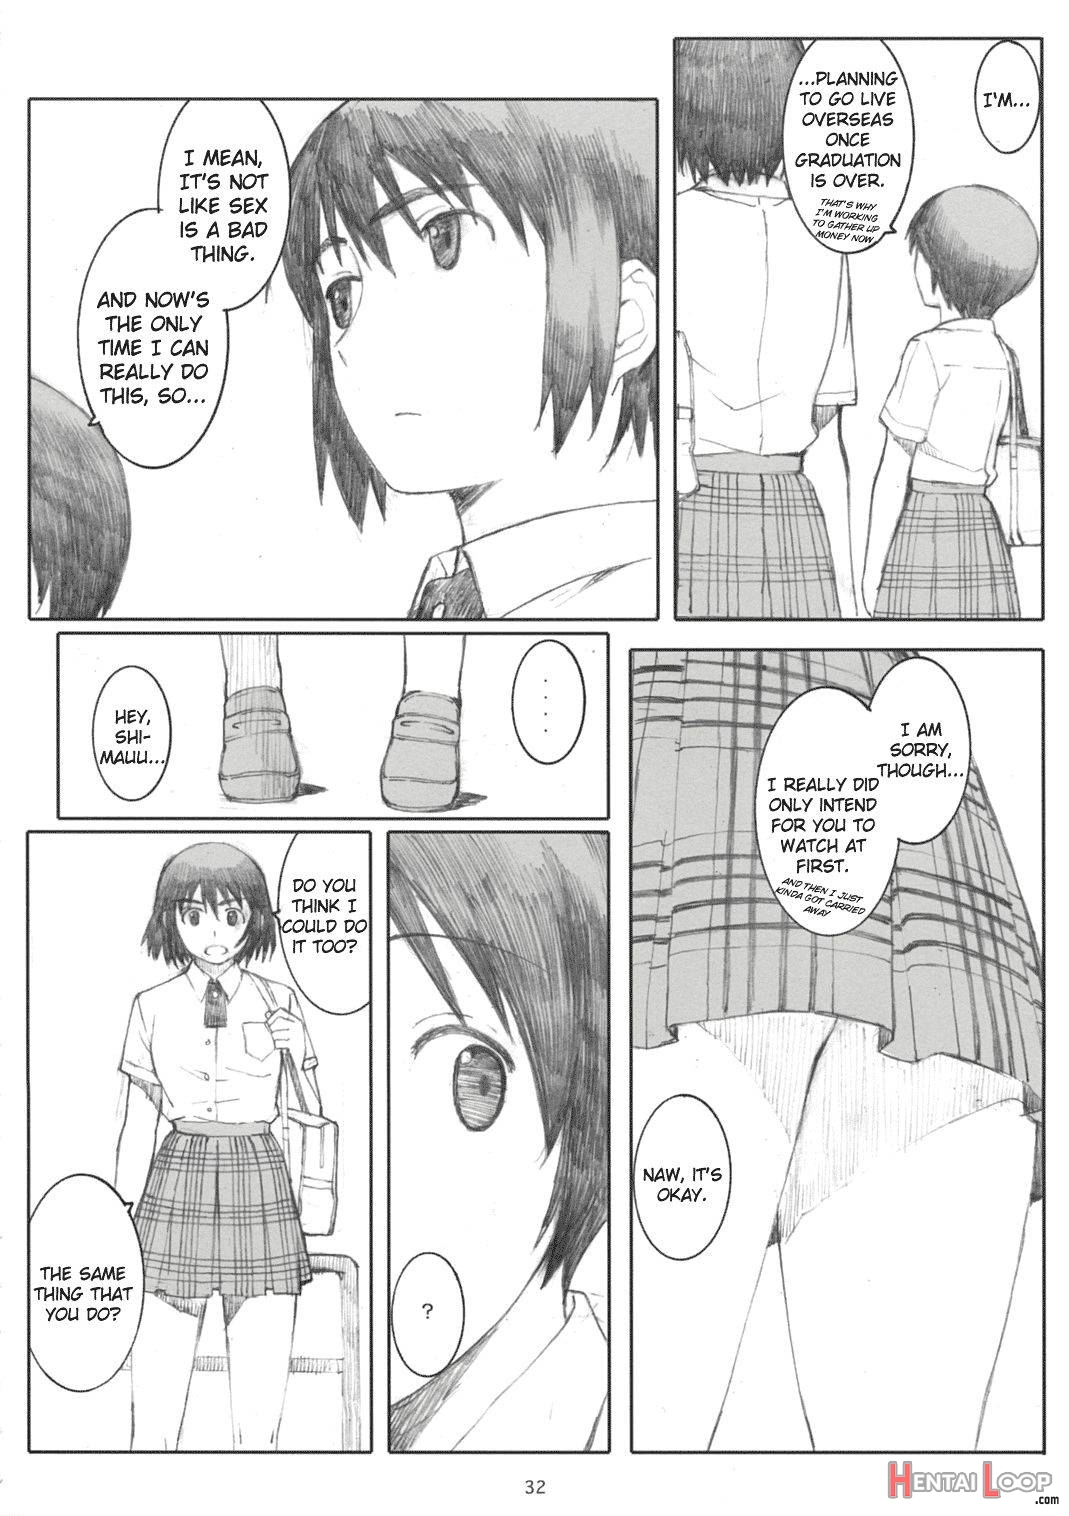 Natsukaze! 2 page 31